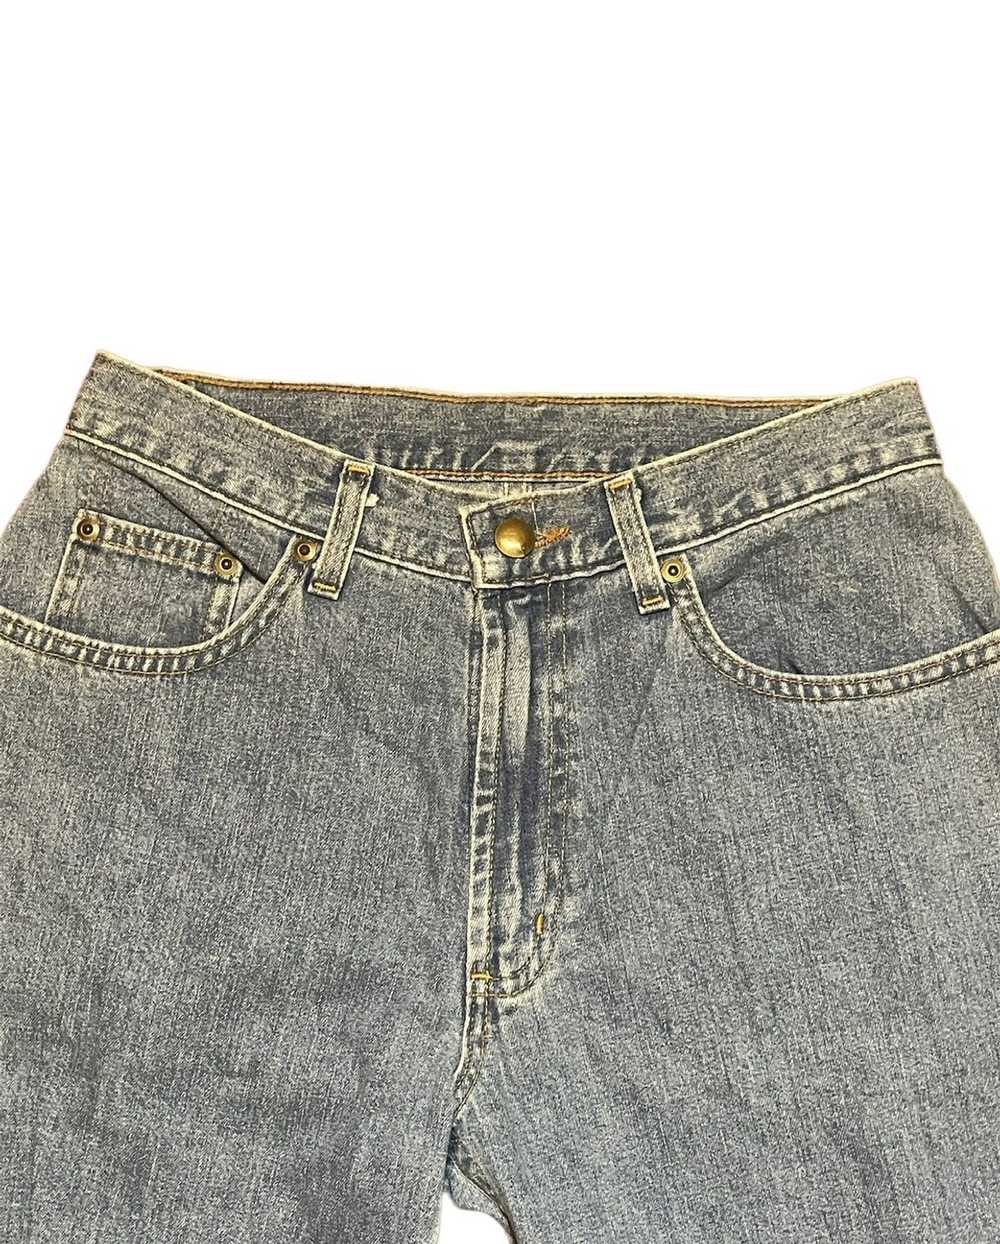 L.L. Bean × Vintage 1990s L.L. Bean denim jeans. - image 3